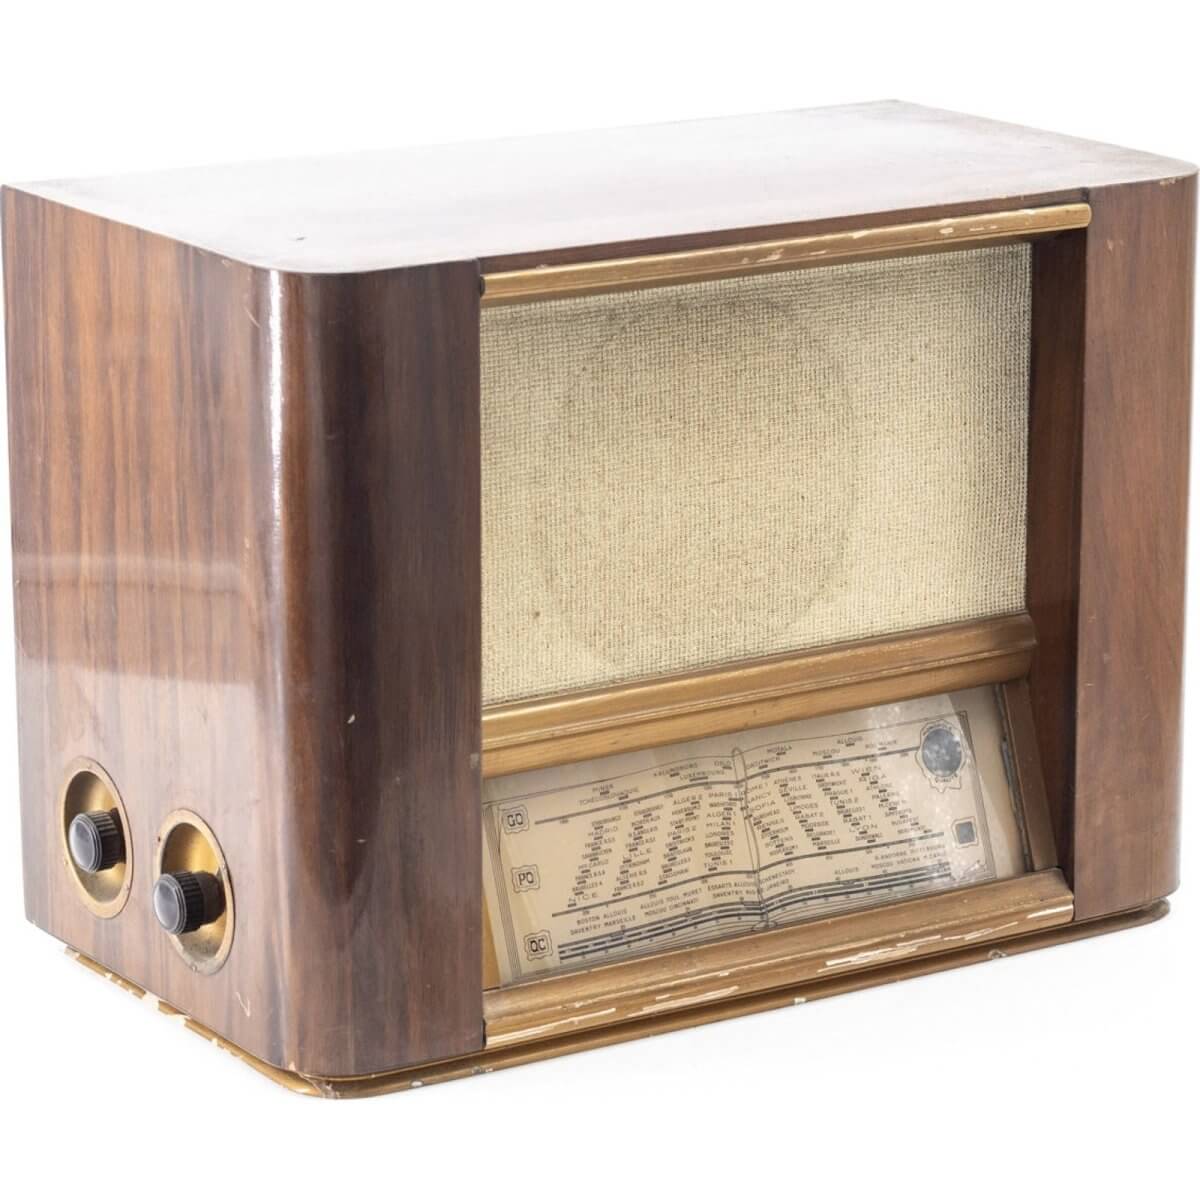 Radio Bluetooth Artisanale Vintage 50’S enceinte connectée française haut de gamme prodige radio vintage